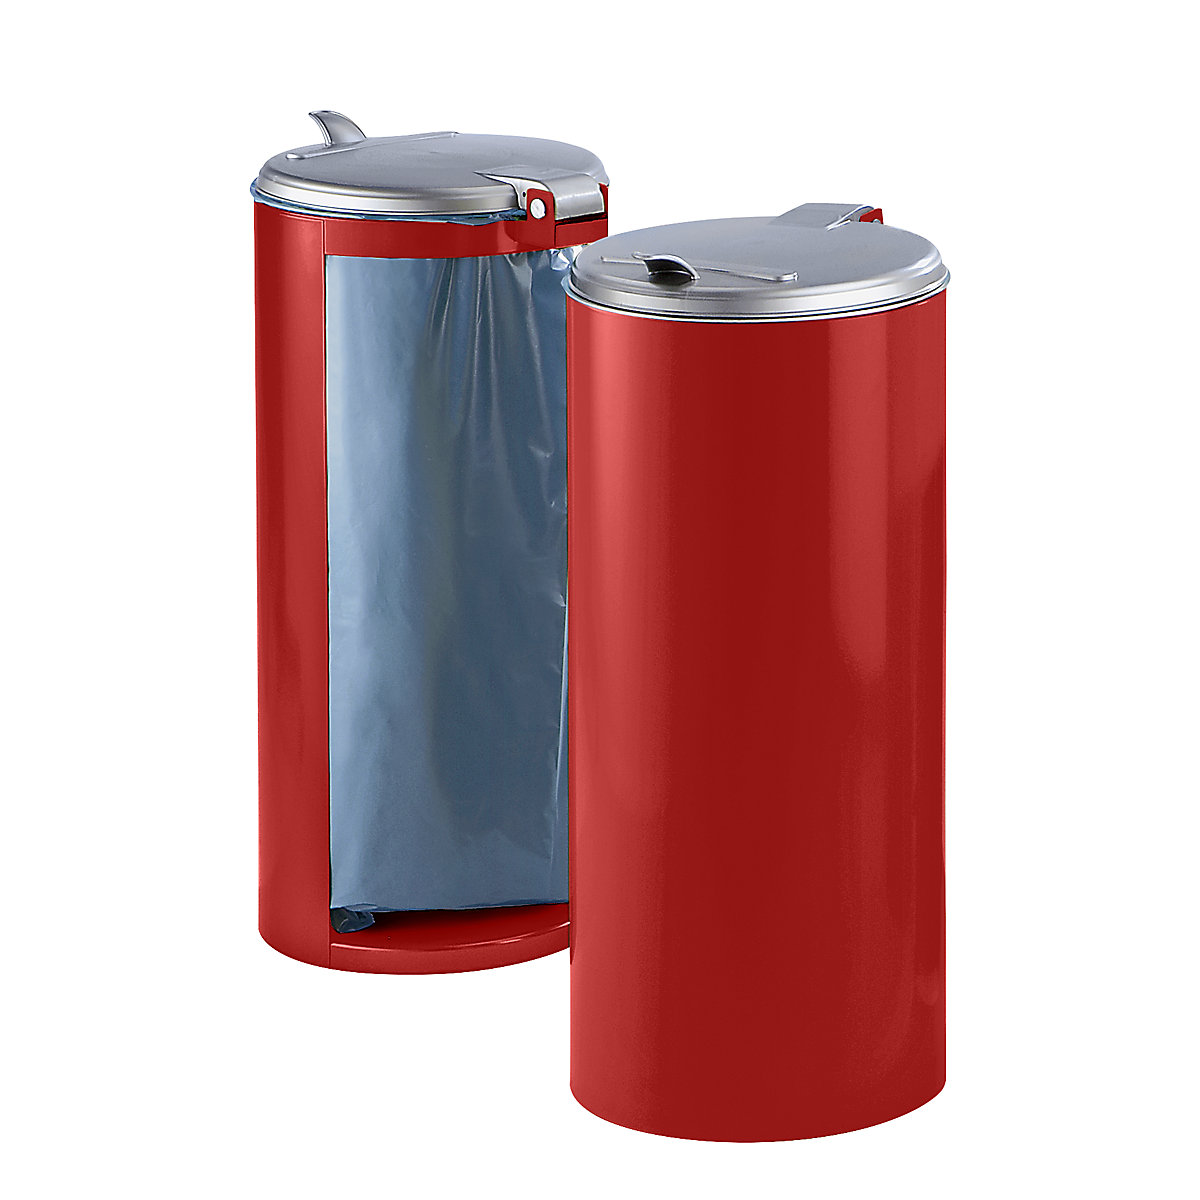 Plaatstalen afvalbak – VAR, voor inhoud 120 l, front gesloten, rood met zilverkleurig kunststof deksel-7